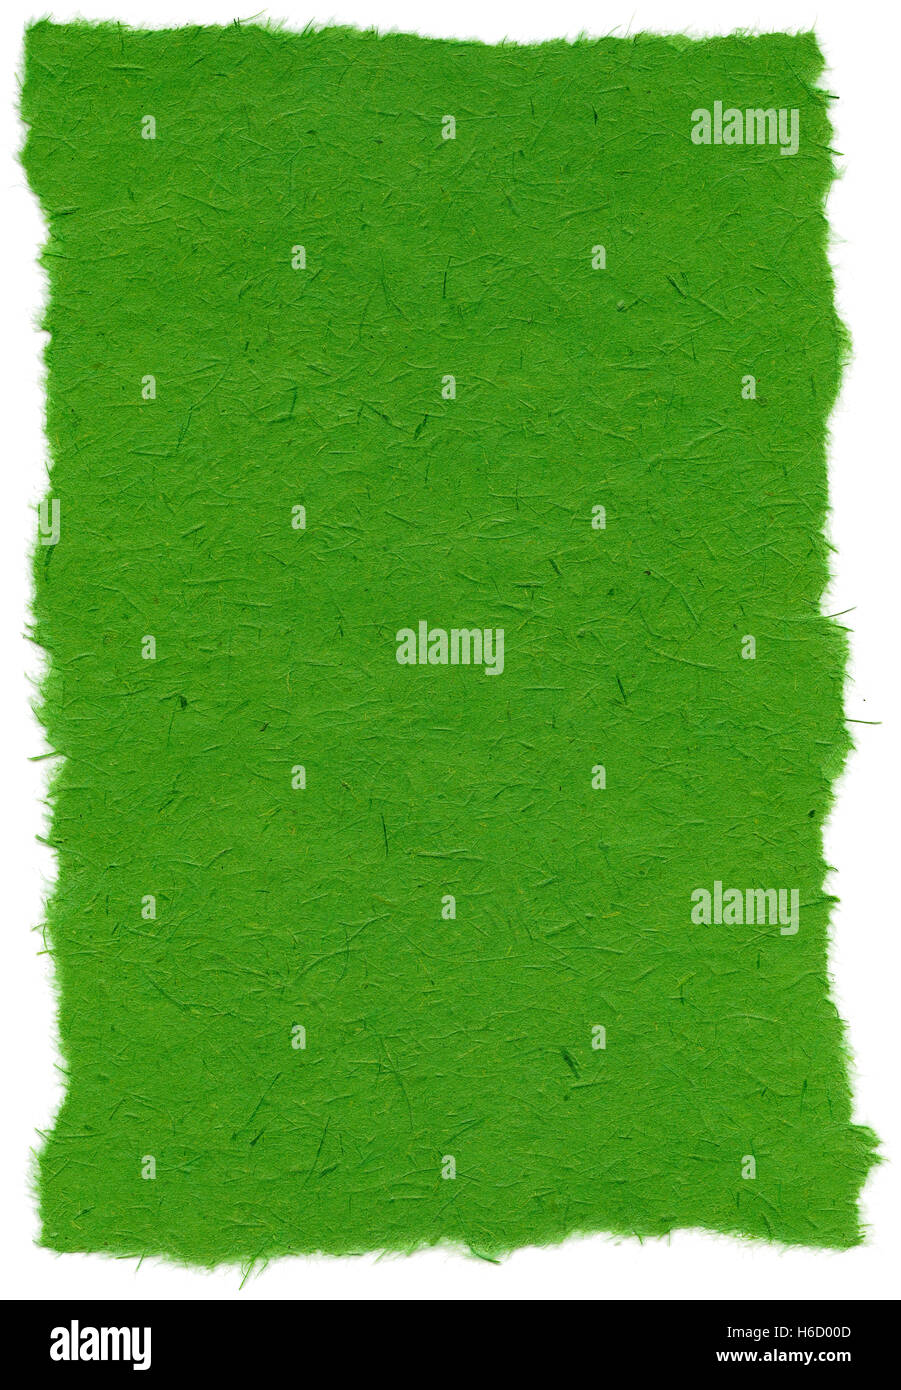 Beschaffenheit von Indien grün Reispapier mit zerrissenen Kanten. Isoliert auf weißem Hintergrund. Bei 1200dpi mit einem professionellen Scanner gescannt Stockfoto